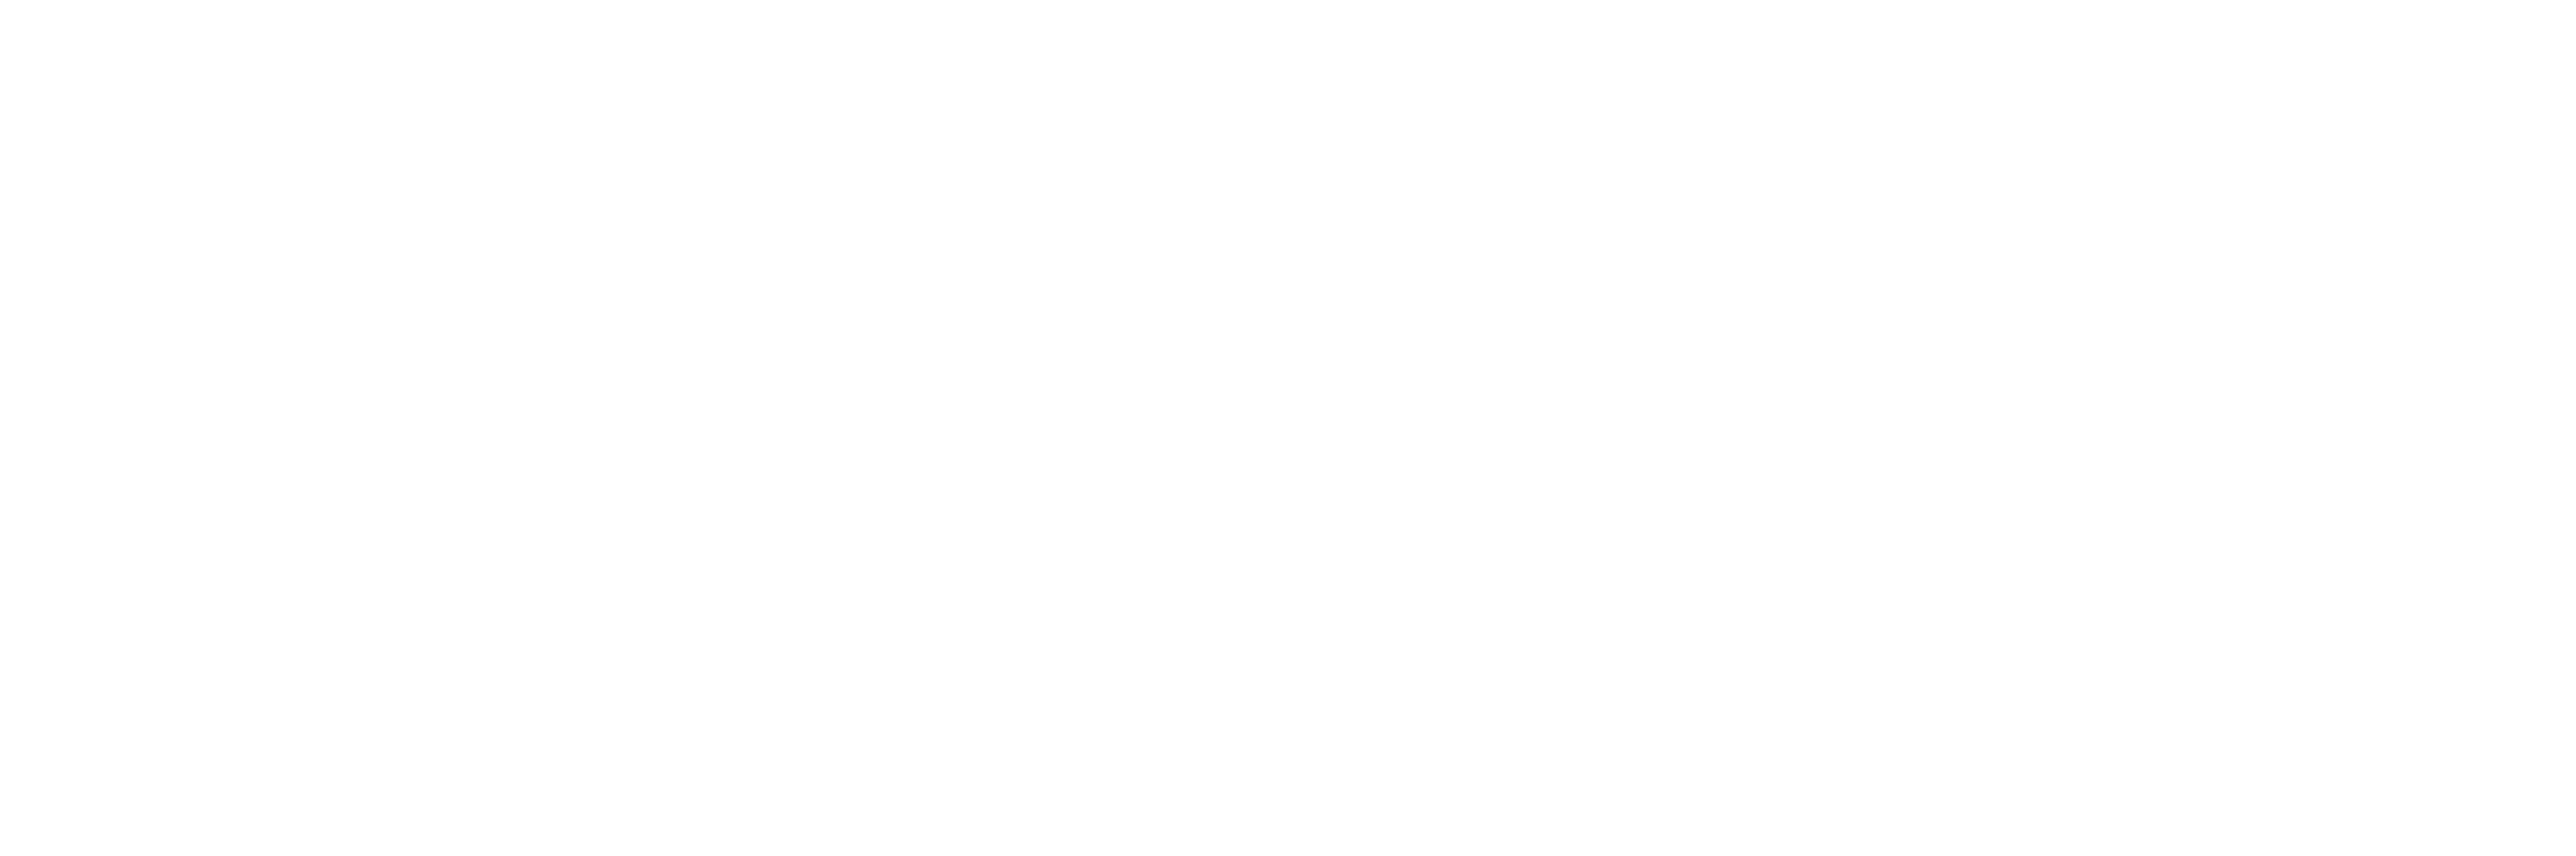 Original Linux Logo - Arch Linux - Artwork